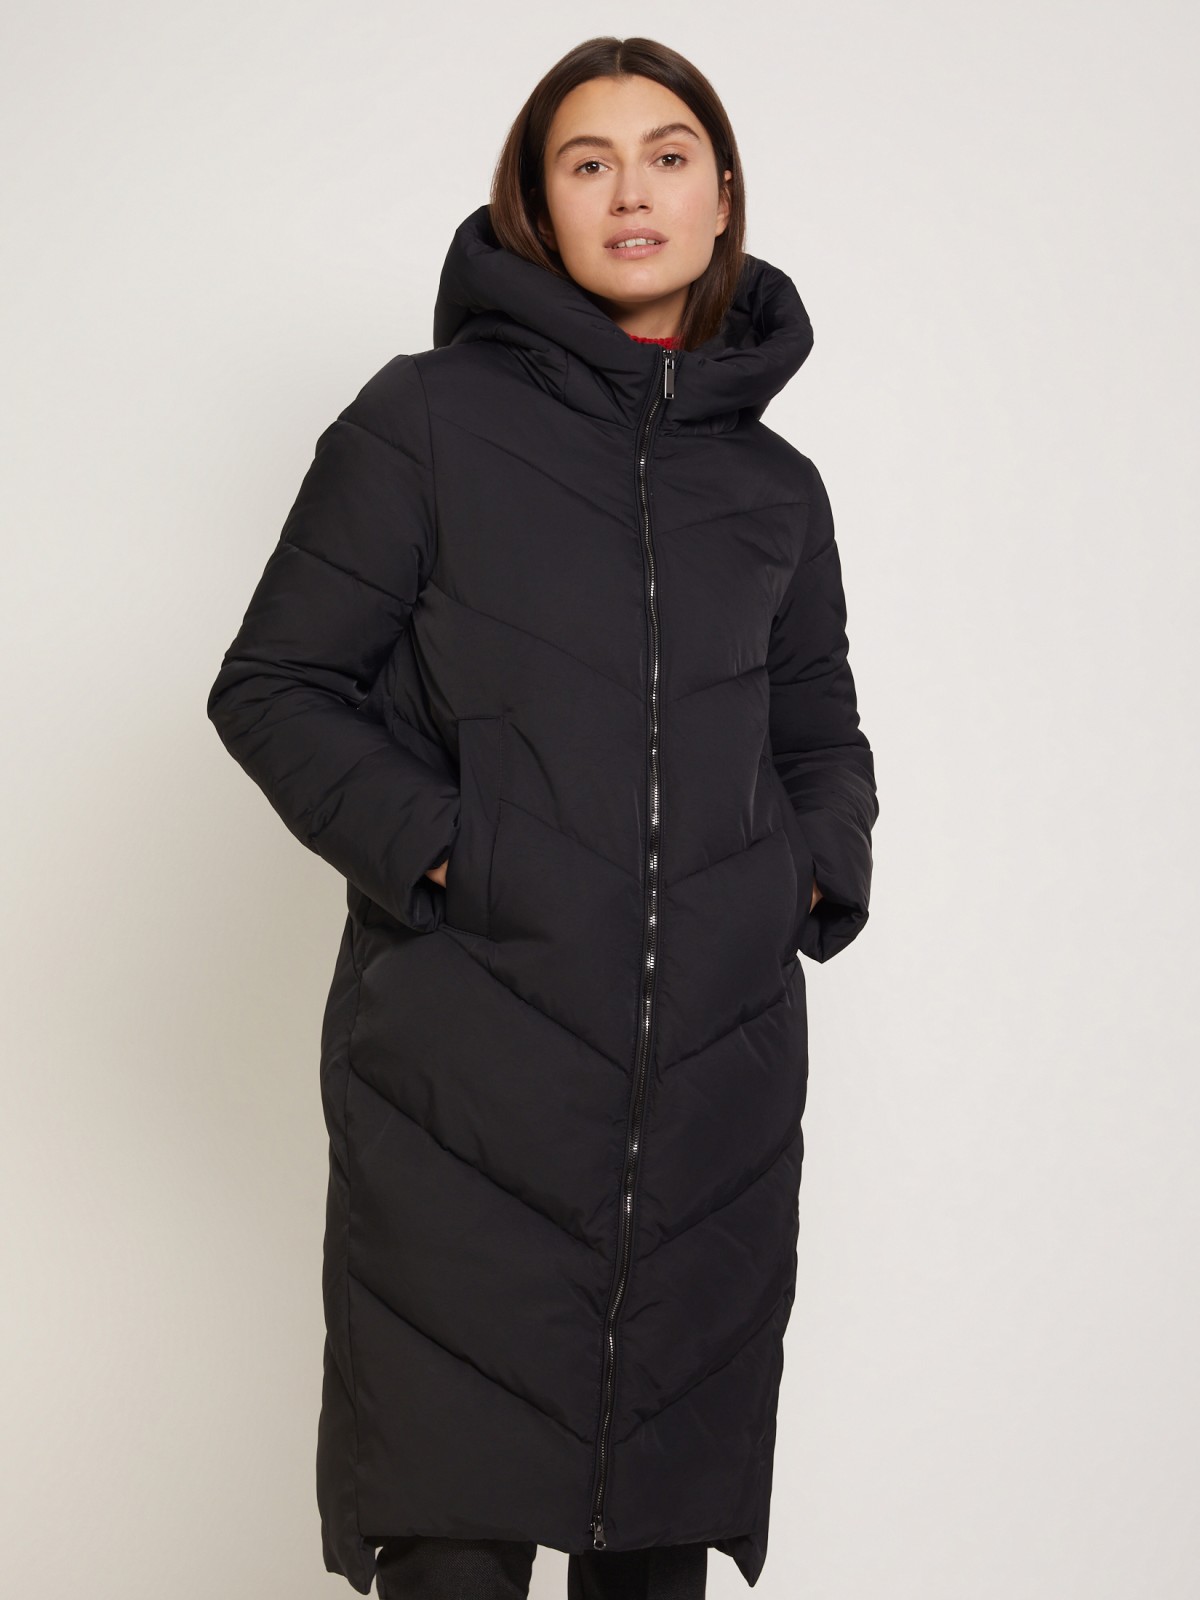 Тёплое стёганое пальто с капюшоном zolla 021345202054, цвет черный, размер XS - фото 2